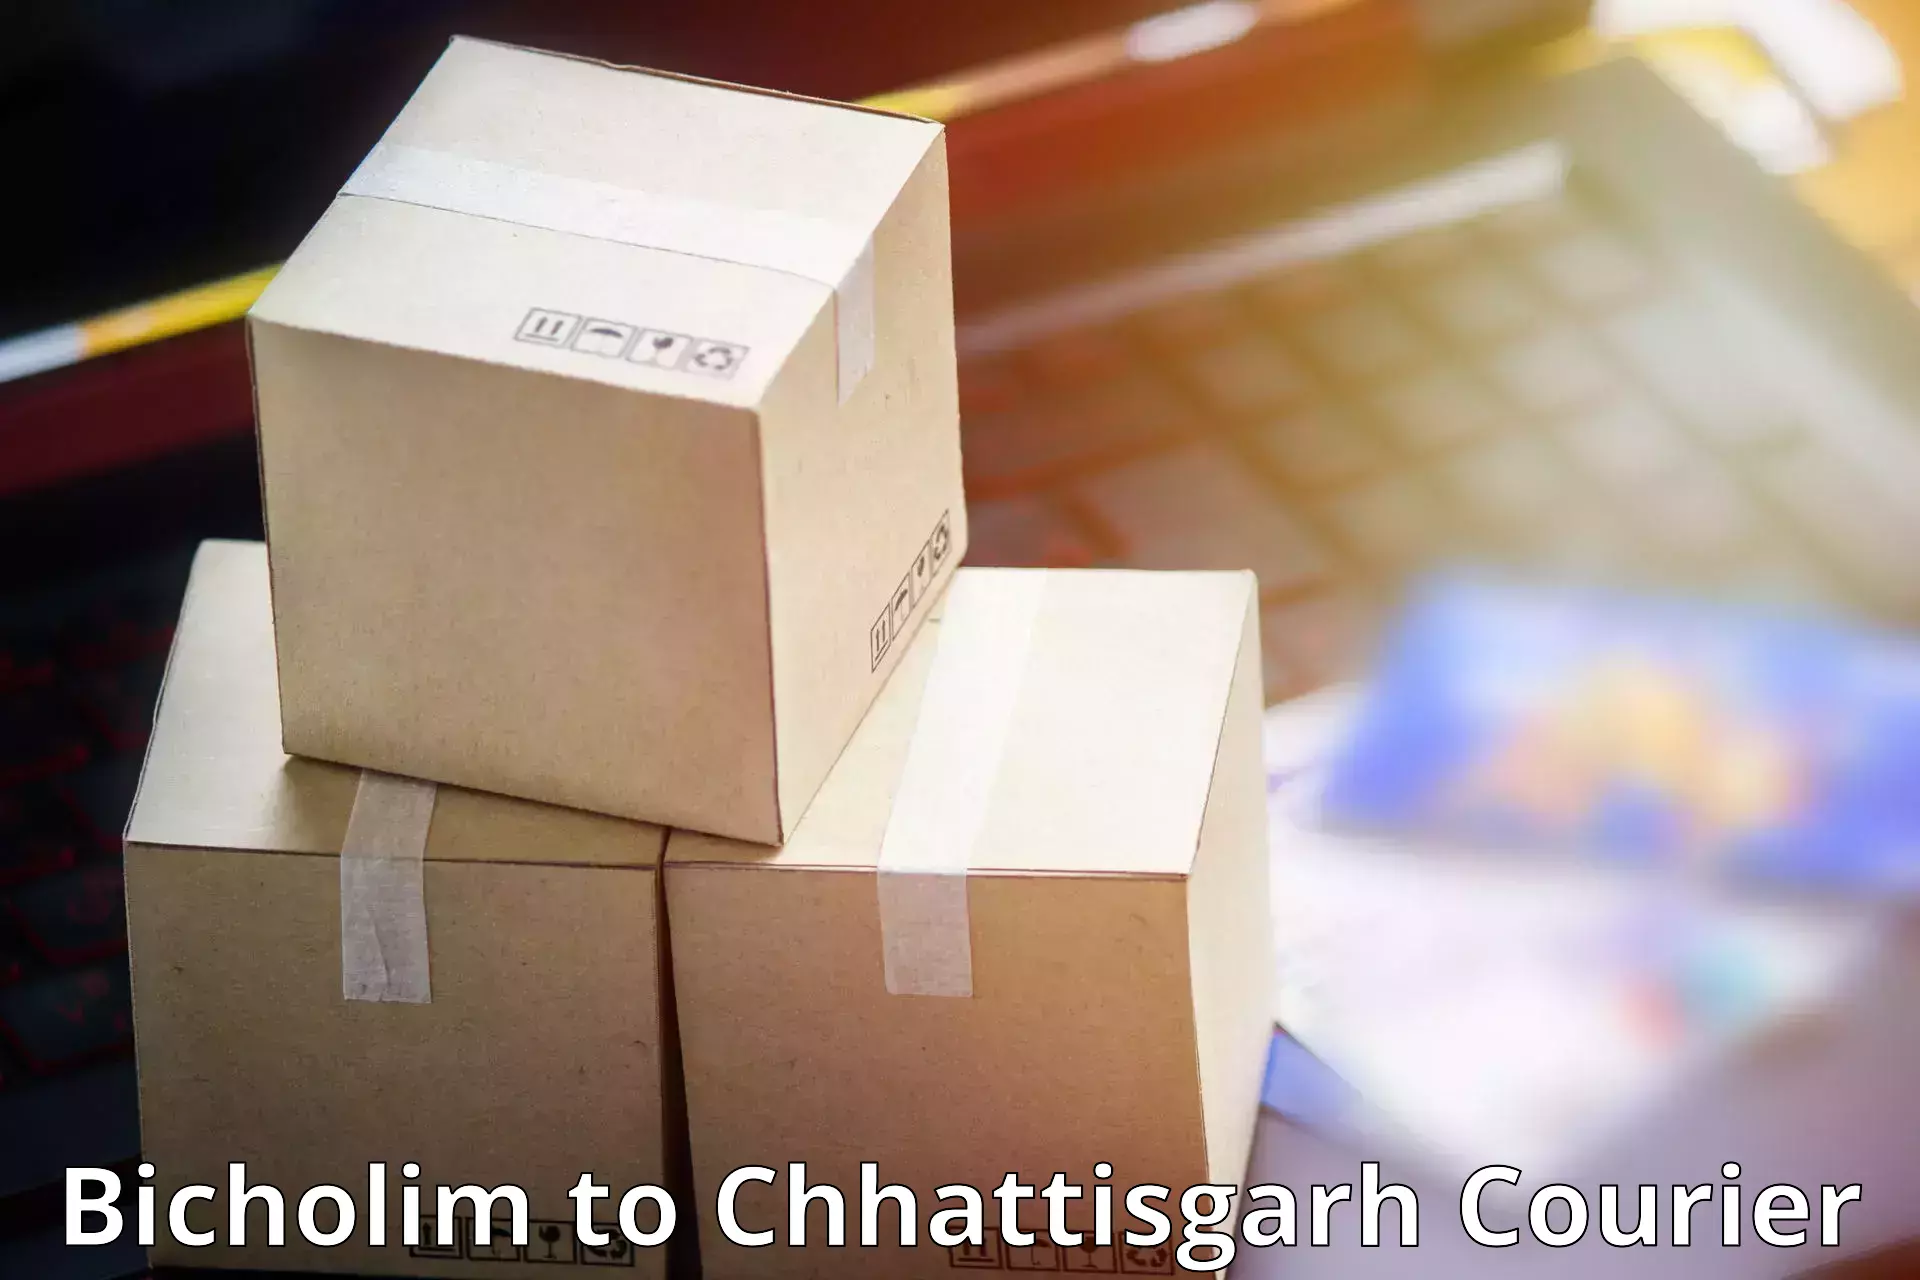 Reliable parcel services Bicholim to Jashpur Nagar